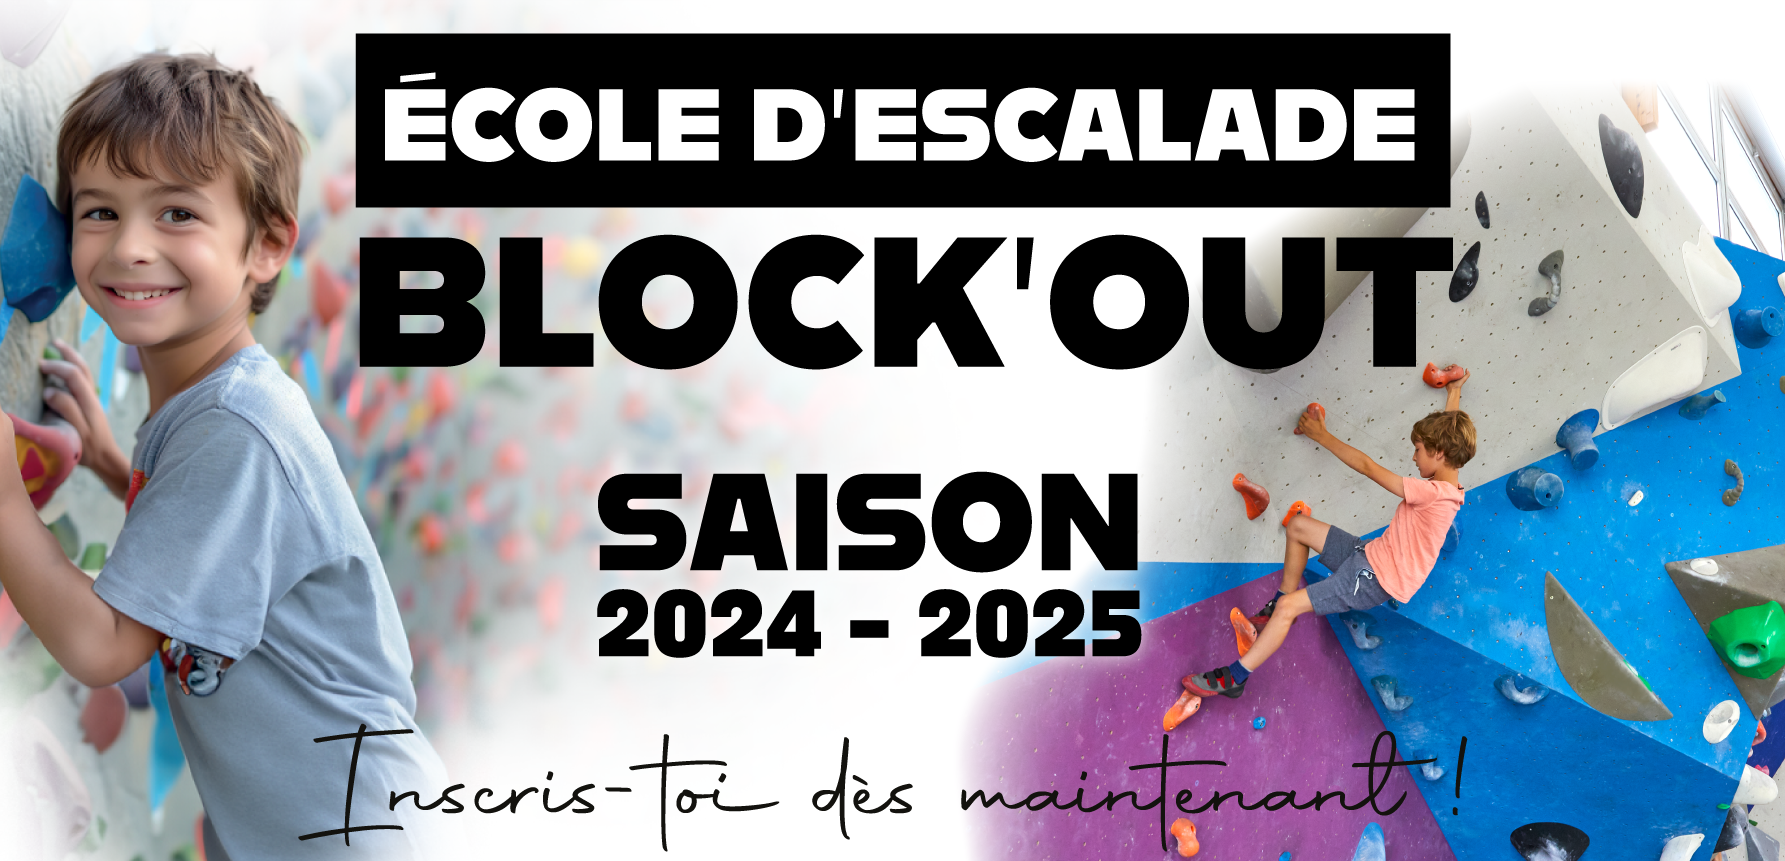 L’Ecole d’Escalade Block’Out, une activité sportive et ludique pour vos enfants! 